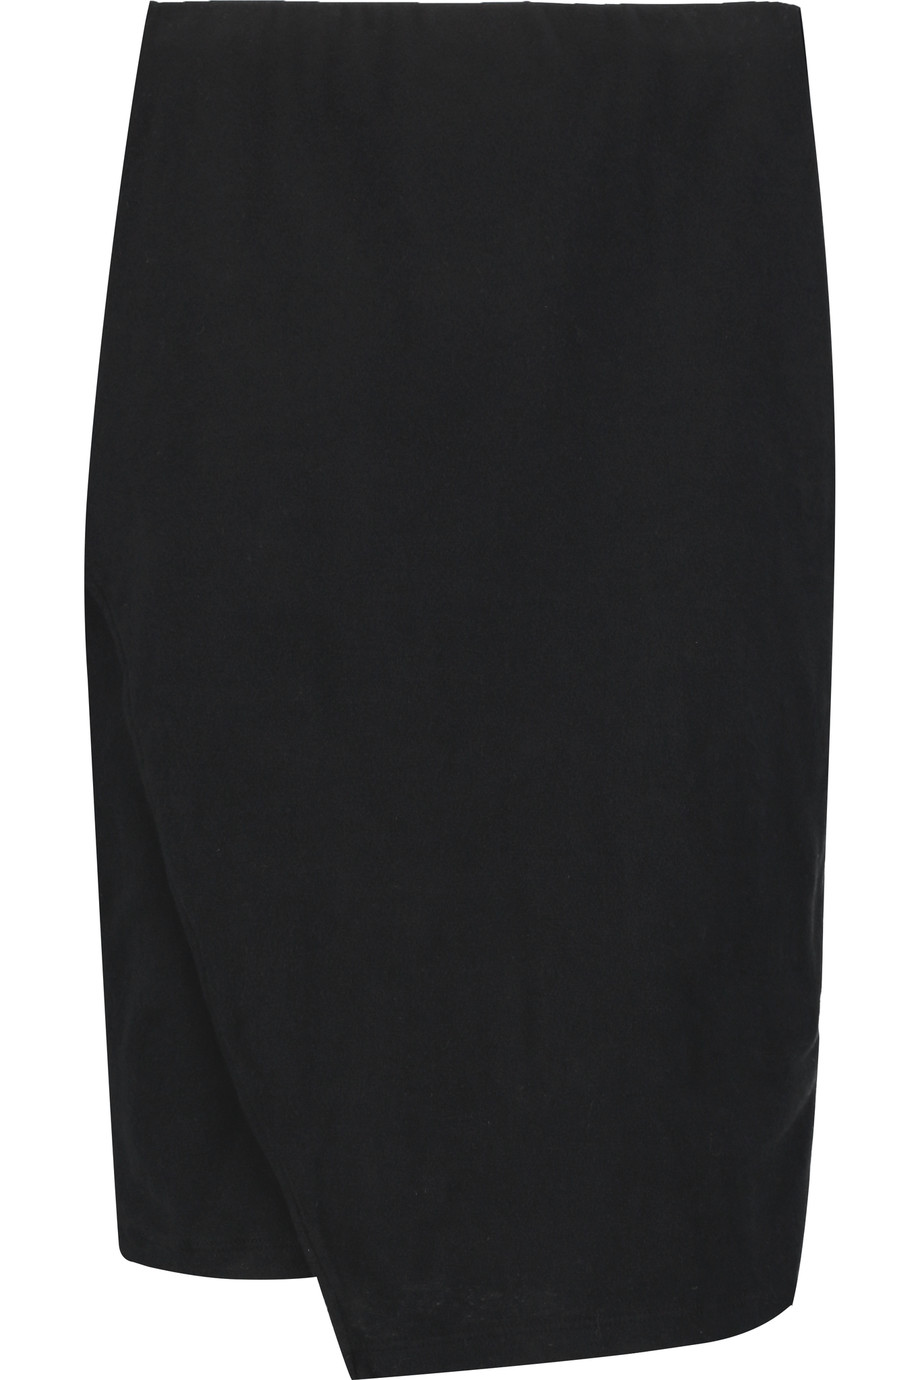 James Perse Stretch Cotton-blend Jersey Skirt | ModeSens